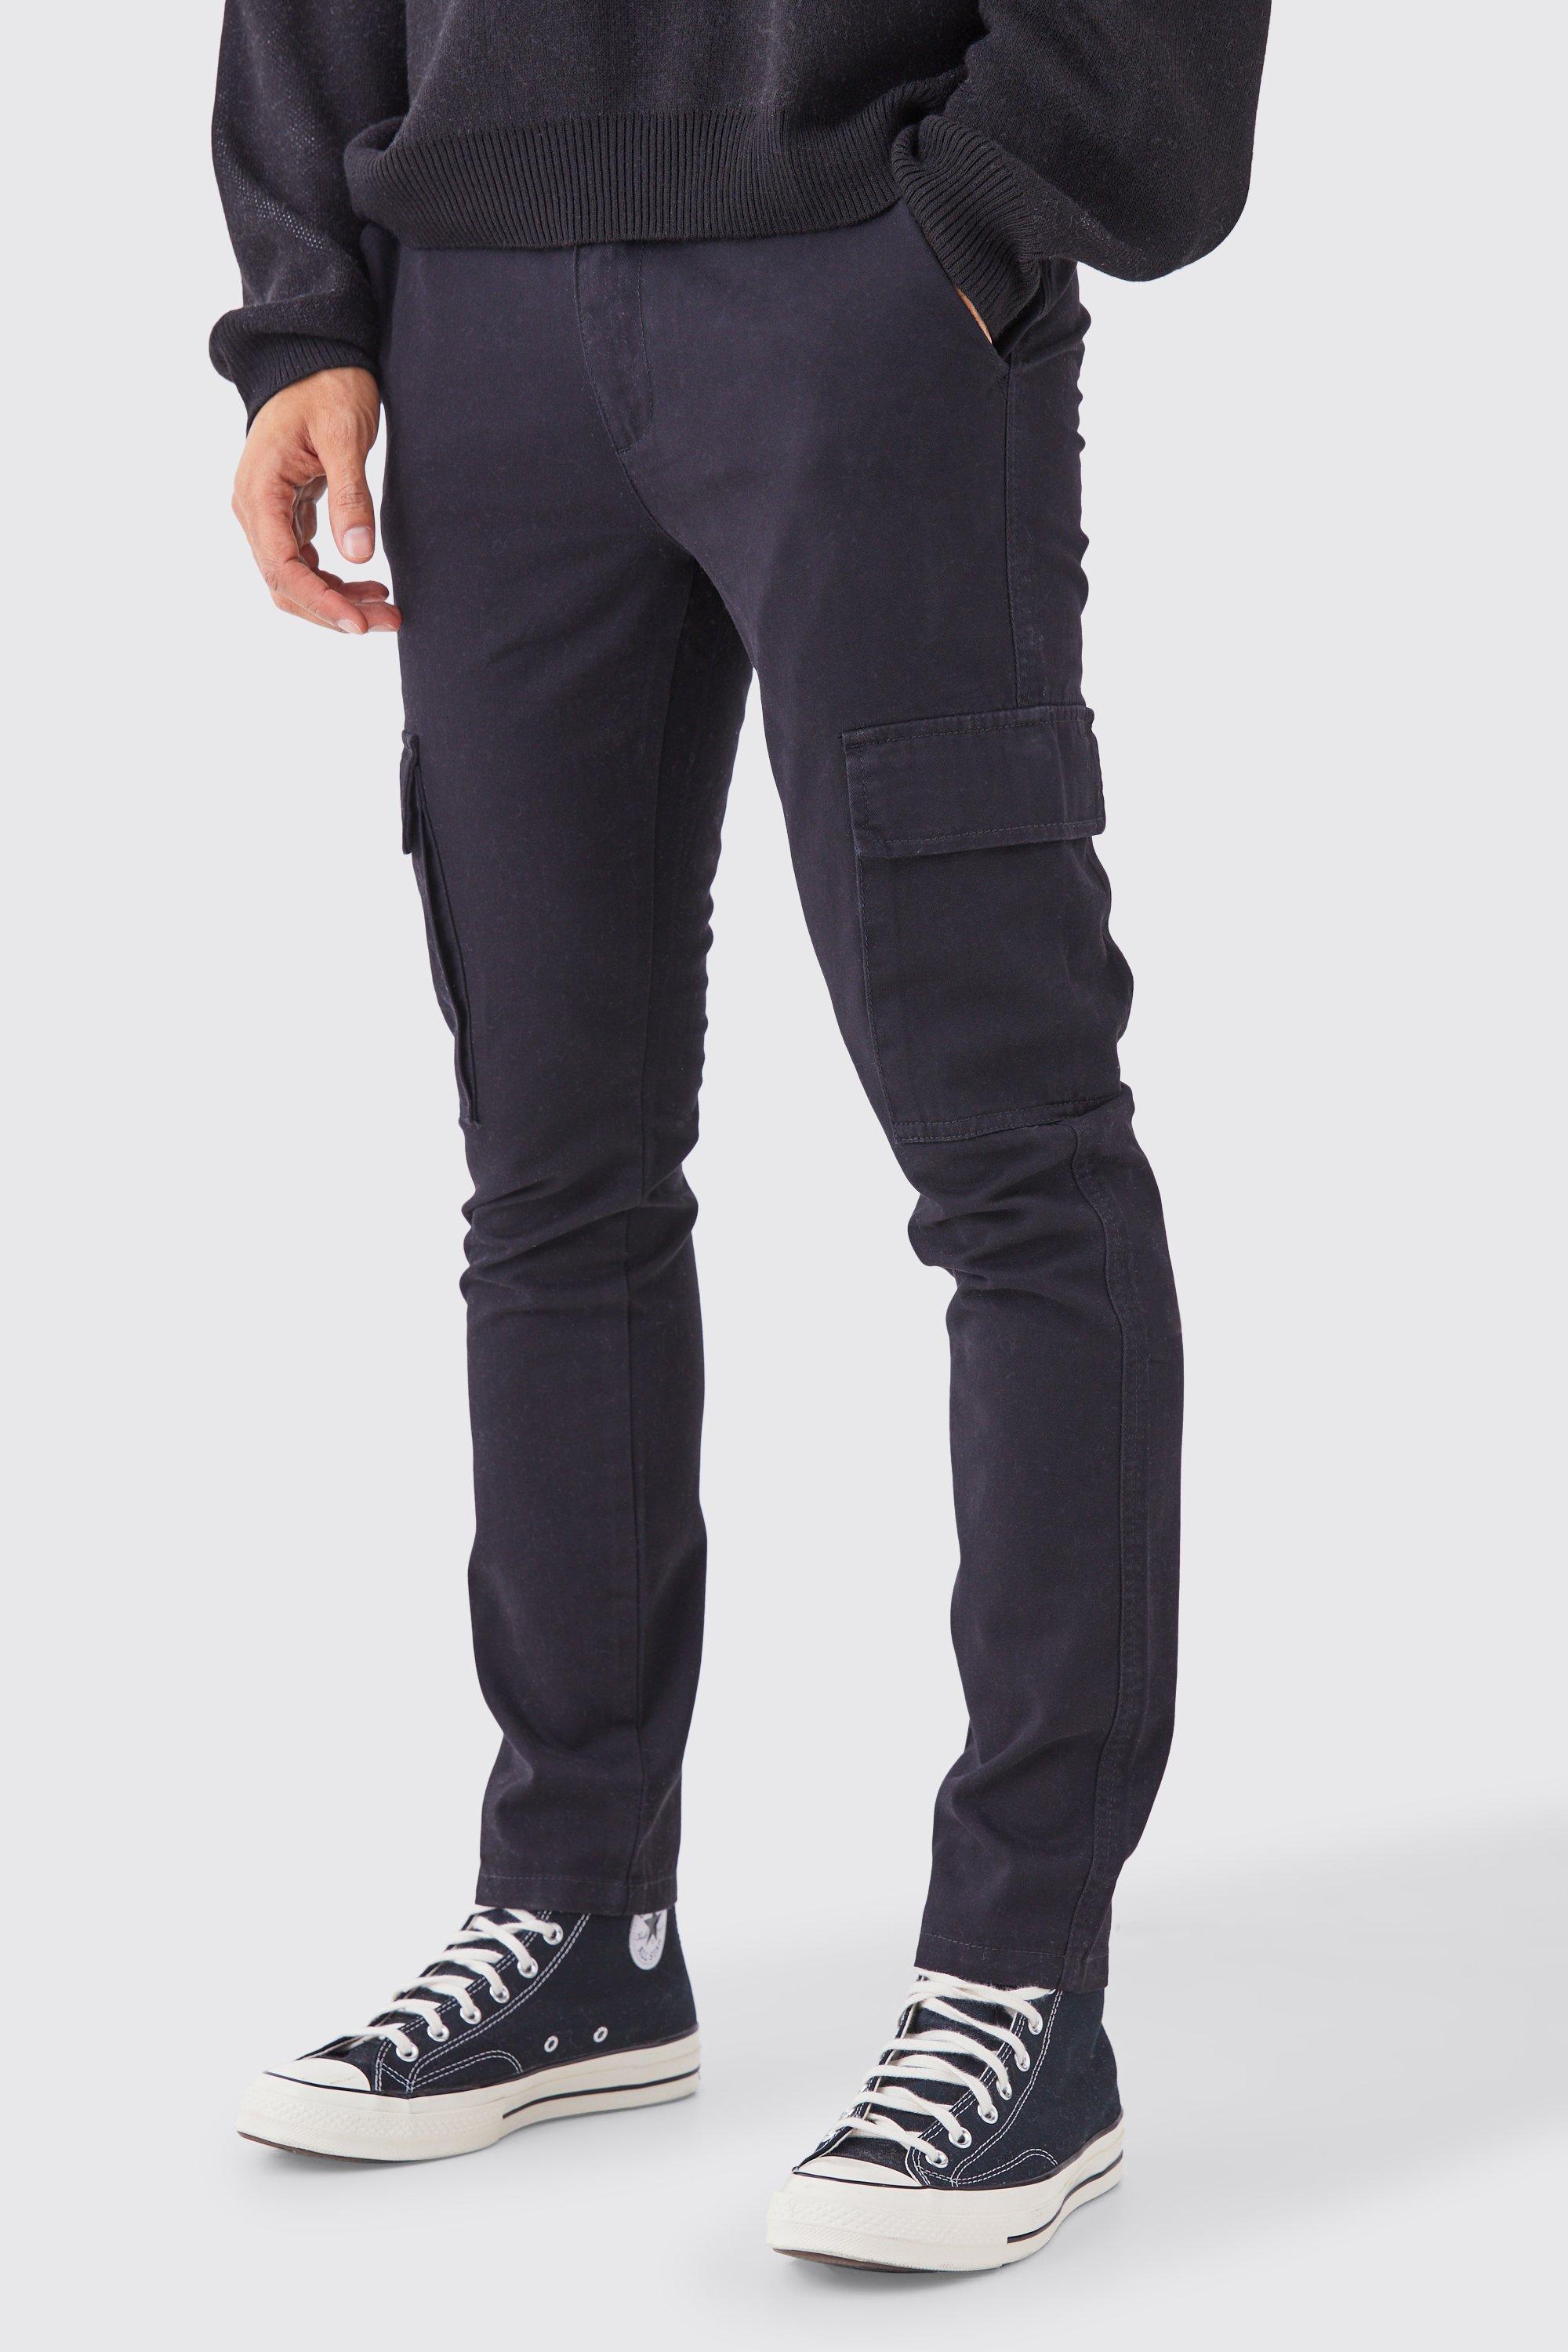 pantalon cargo skinny homme - noir - s, noir